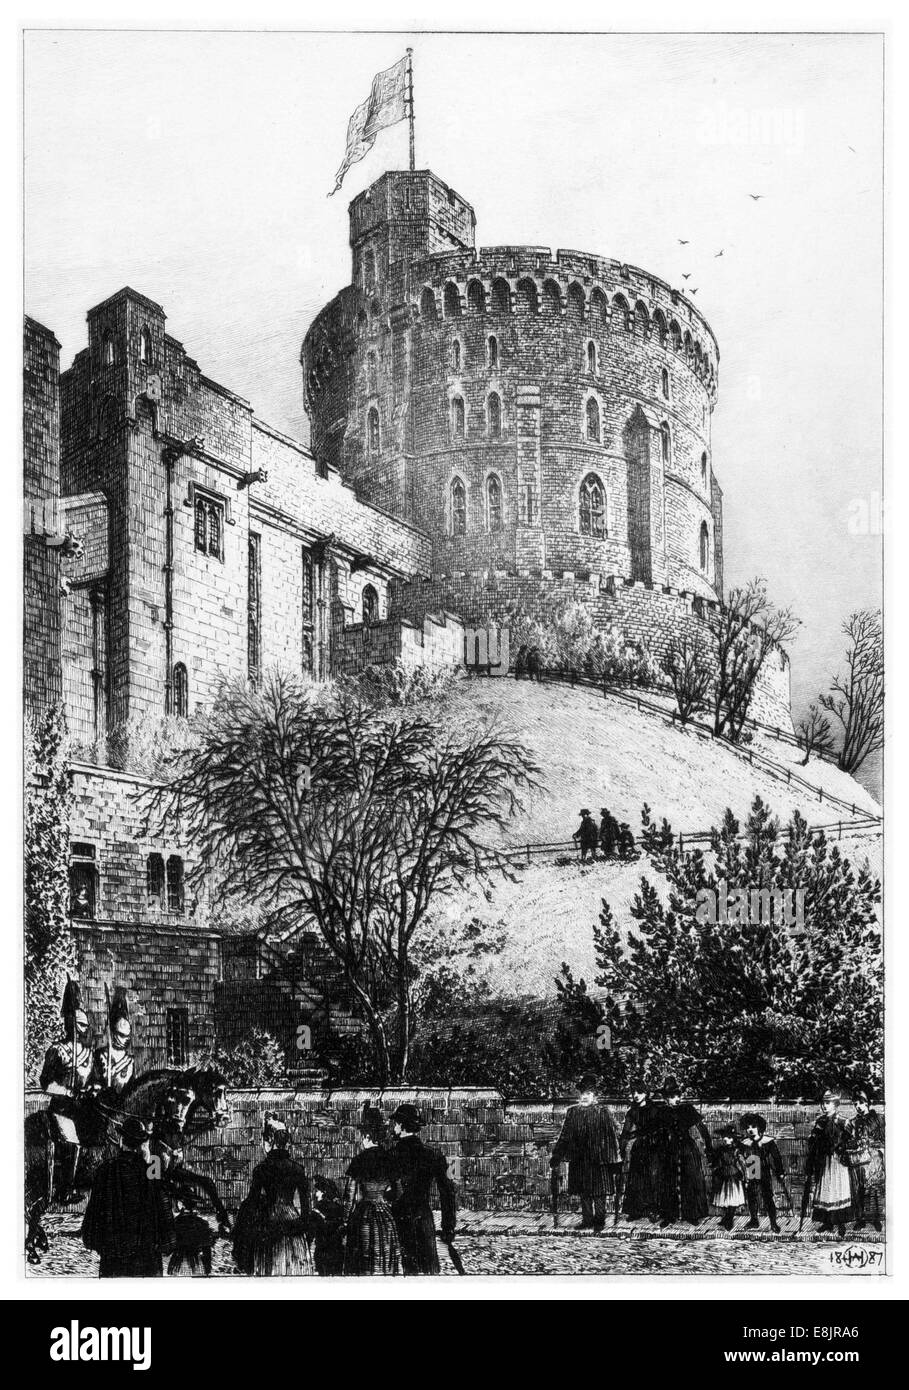 La tour ronde du château de Windsor 1887 Travel Park Royal tourisme accueil portrait d'un drapeau Angleterre UK Royaume-Uni GB Grande Bretagne Banque D'Images